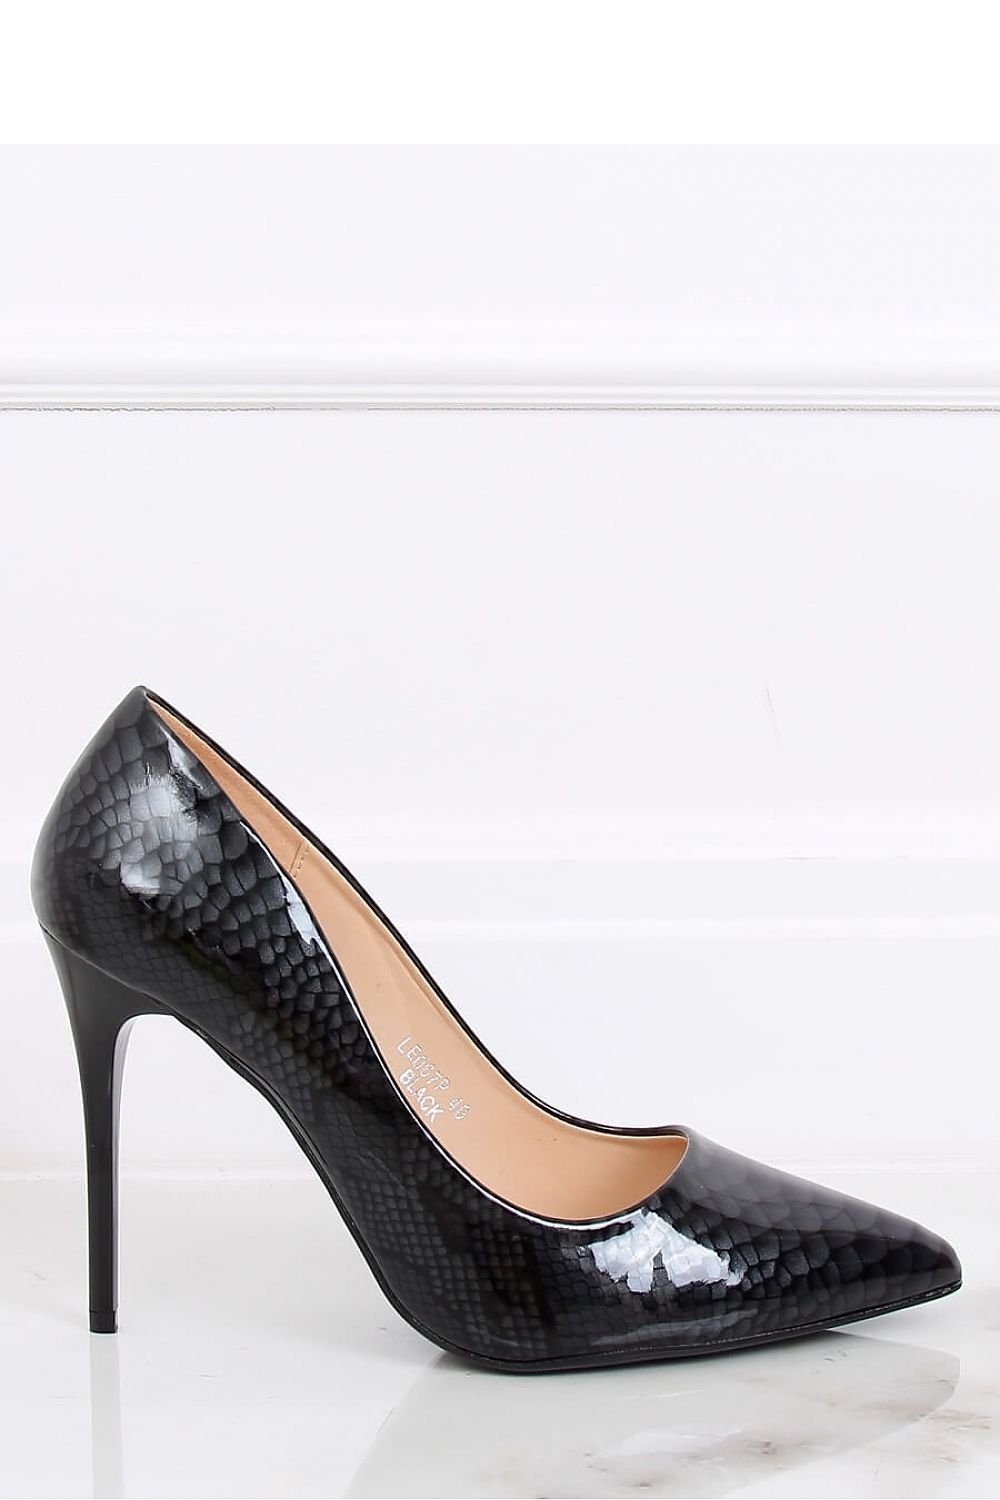 High heels model 139748 Inello